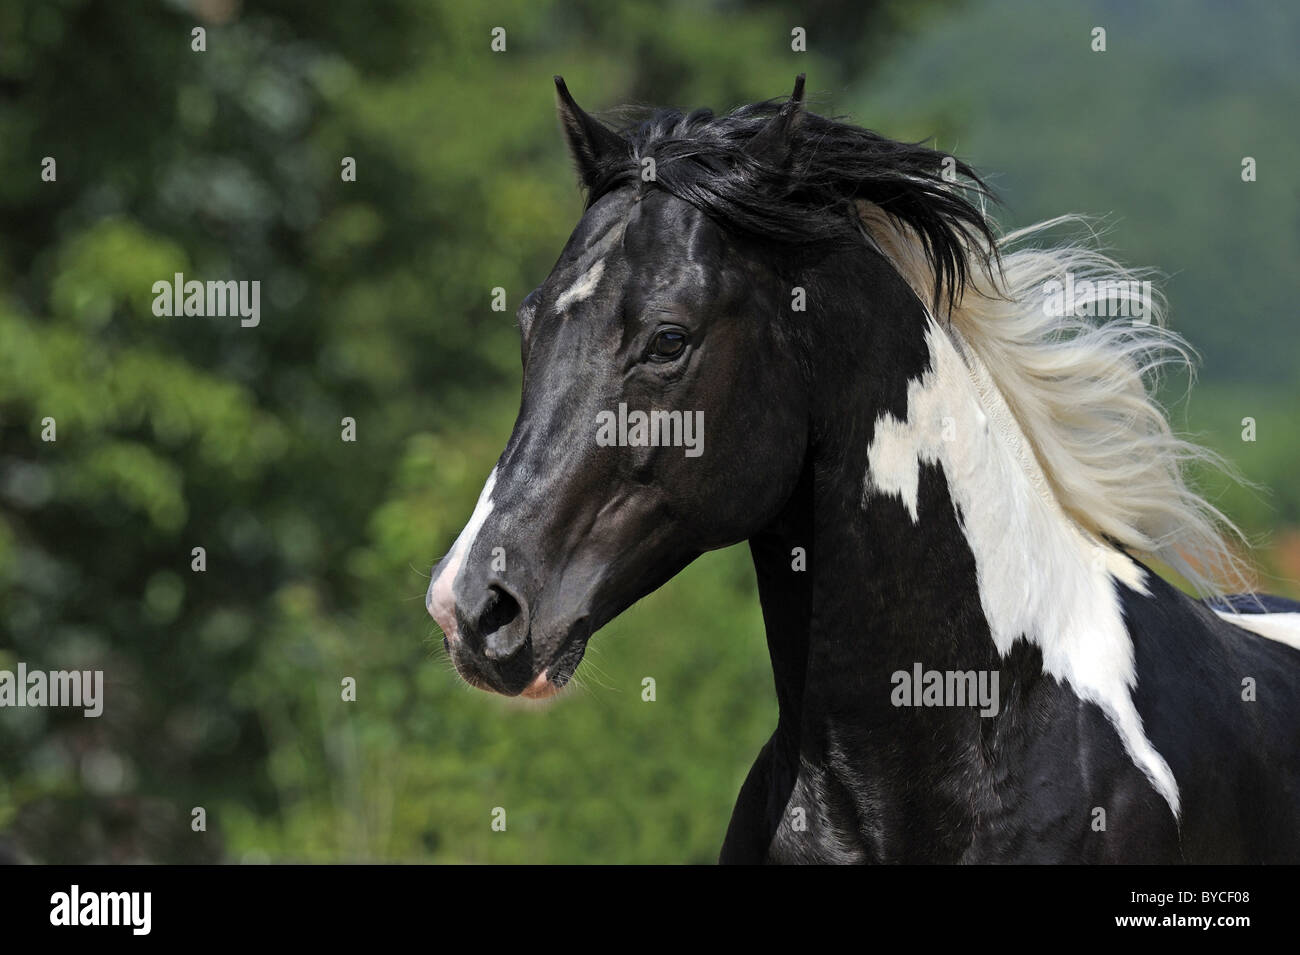 Peindre le Cheval (Equus ferus caballus). Portrait d'un étalon noir et wihite avec mane qui coule. Banque D'Images